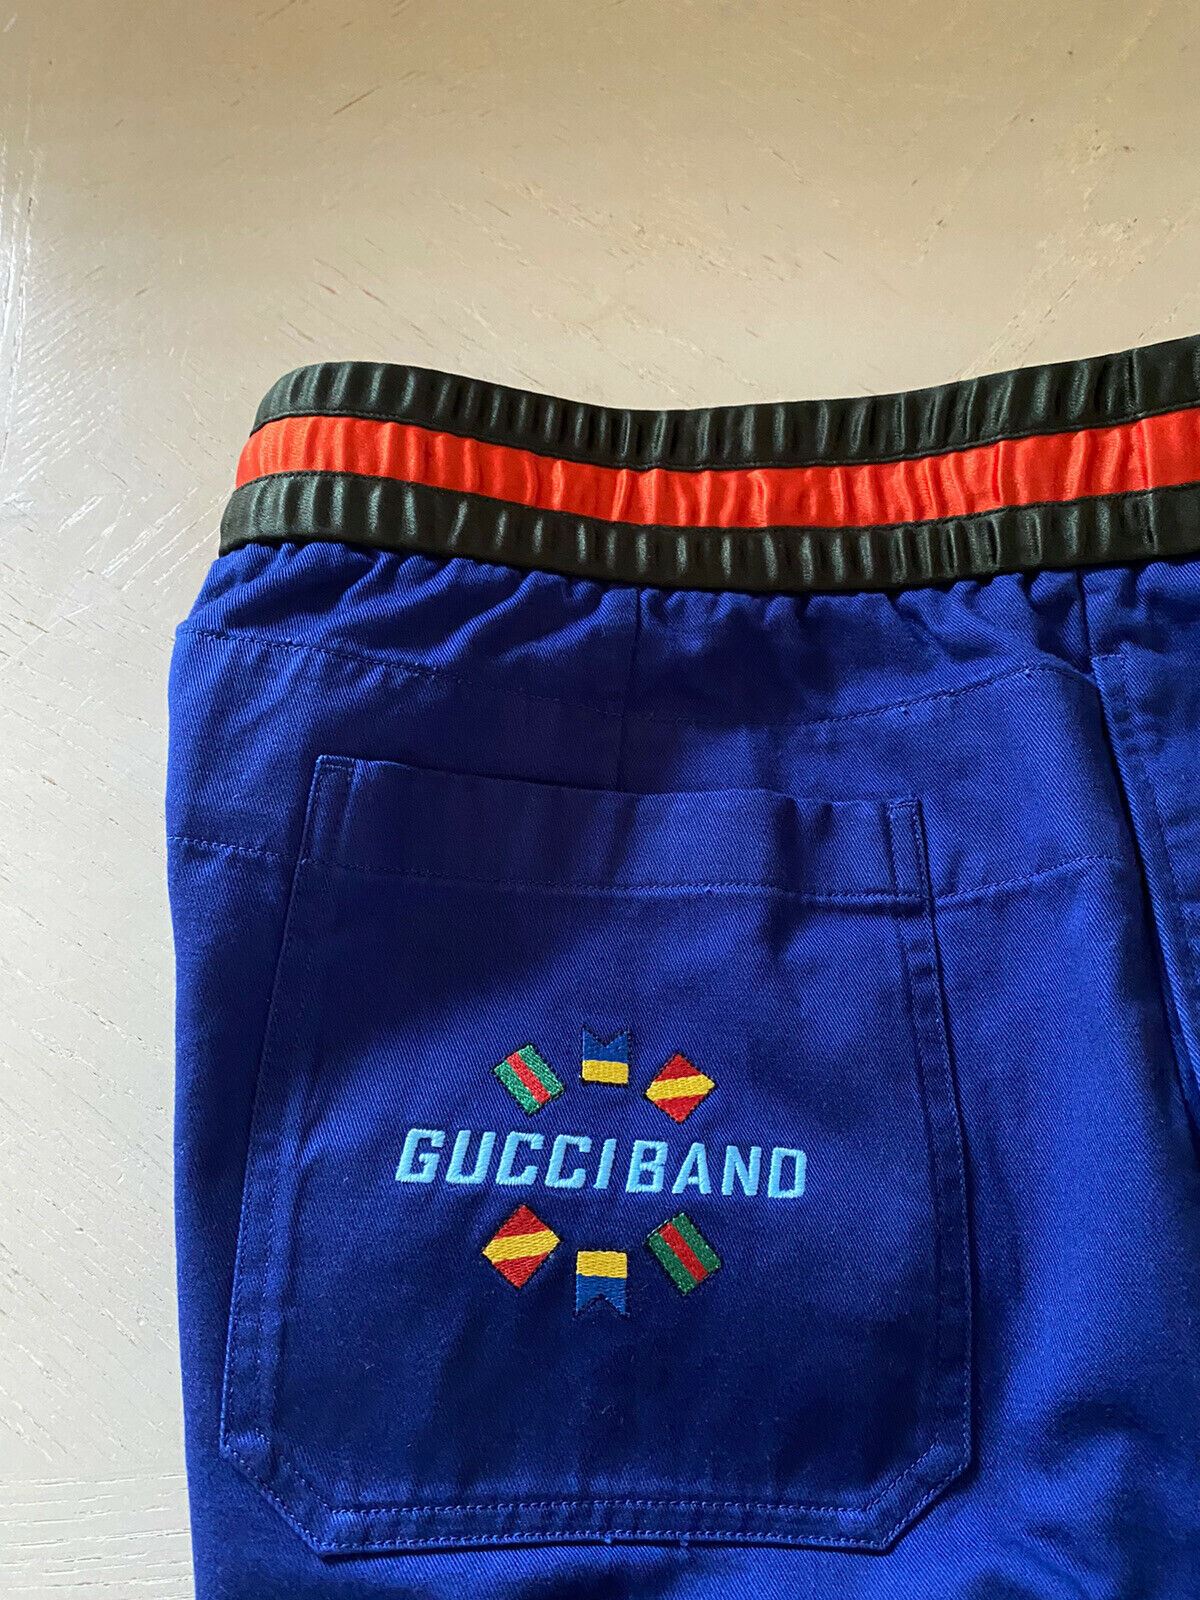 Neue 980 $ Gucci Herren Gucci Band Jegging Hose Blau 34 US (50 Eu) Hergestellt in Italien